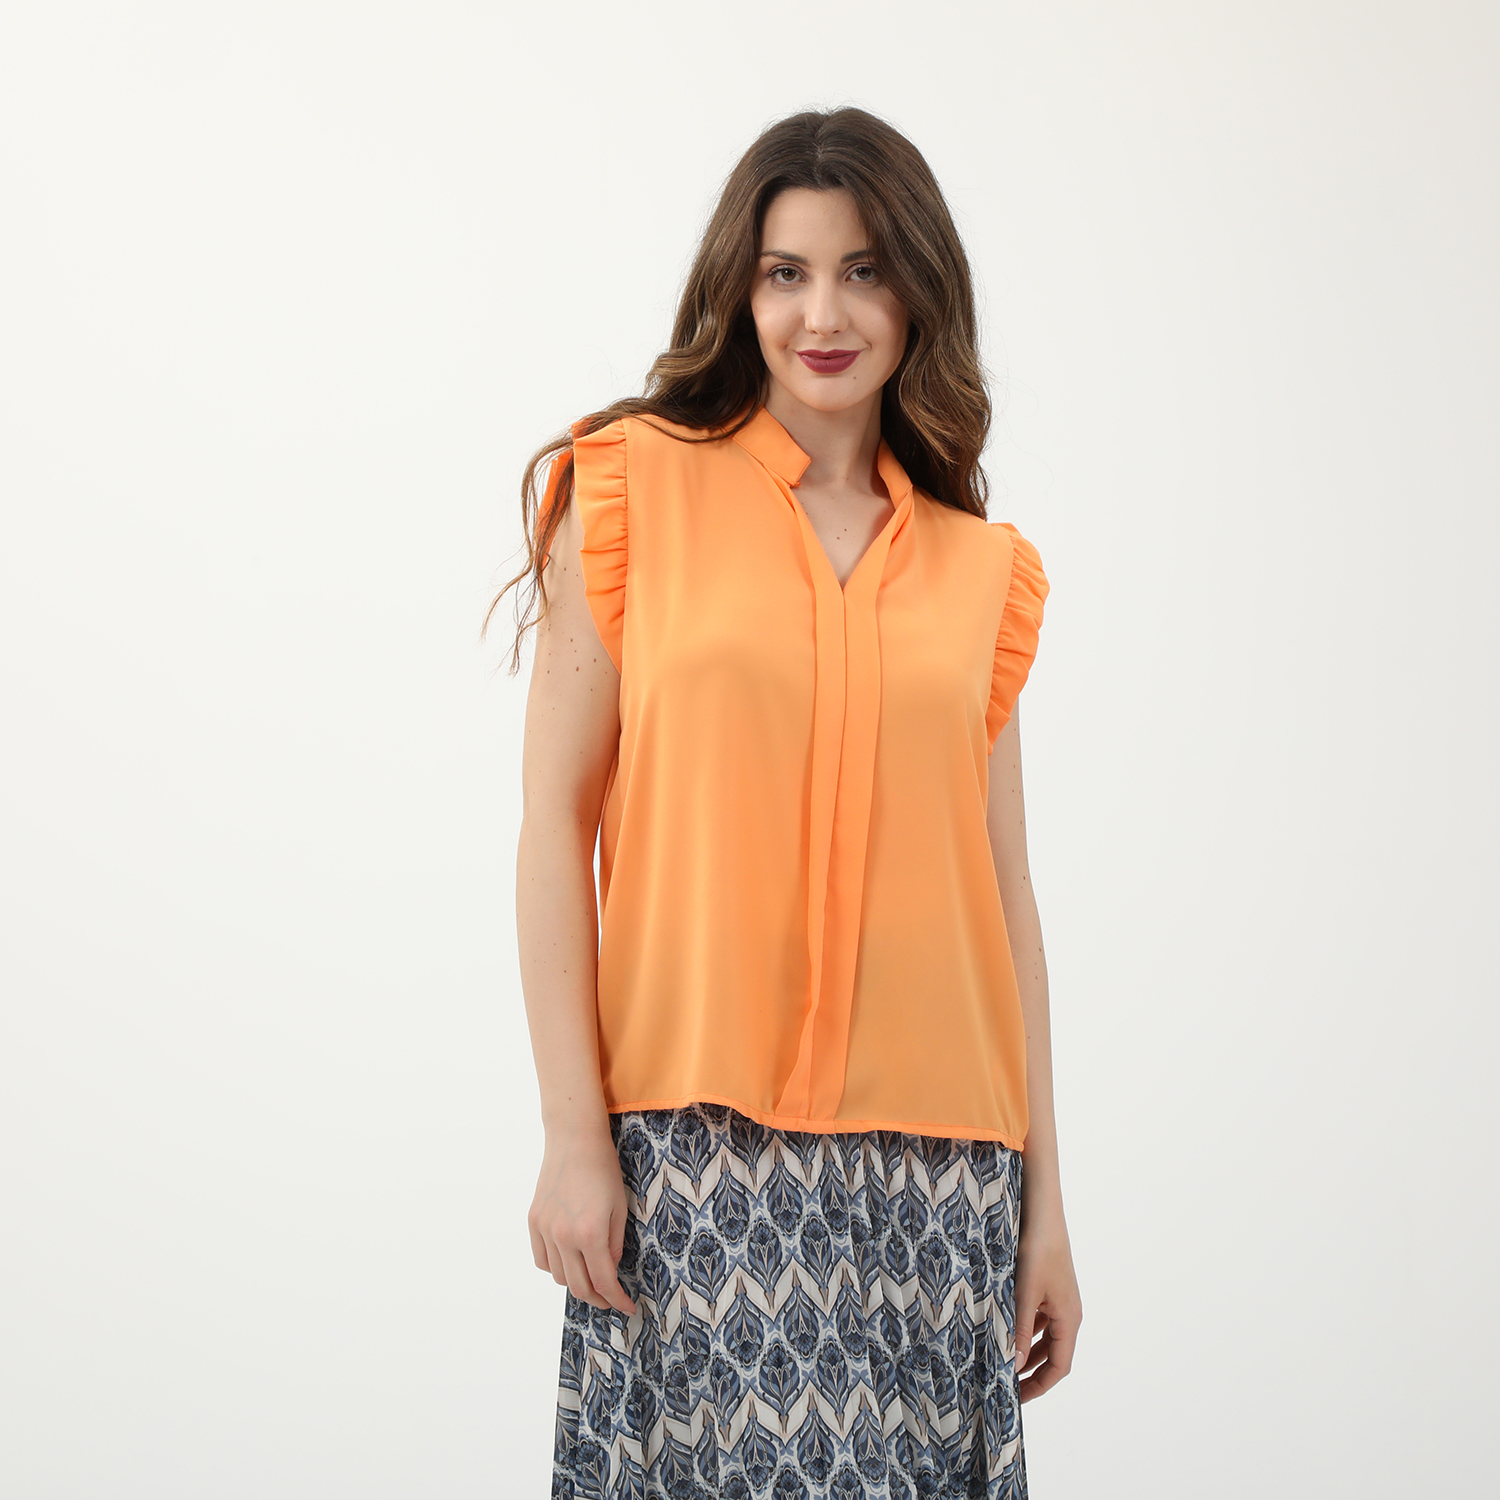 Γυναικεία/Ρούχα/Μπλούζες/Αμάνικες ATTRATTIVO - Γυναικείο top ATTRATTIVO πορτοκαλί